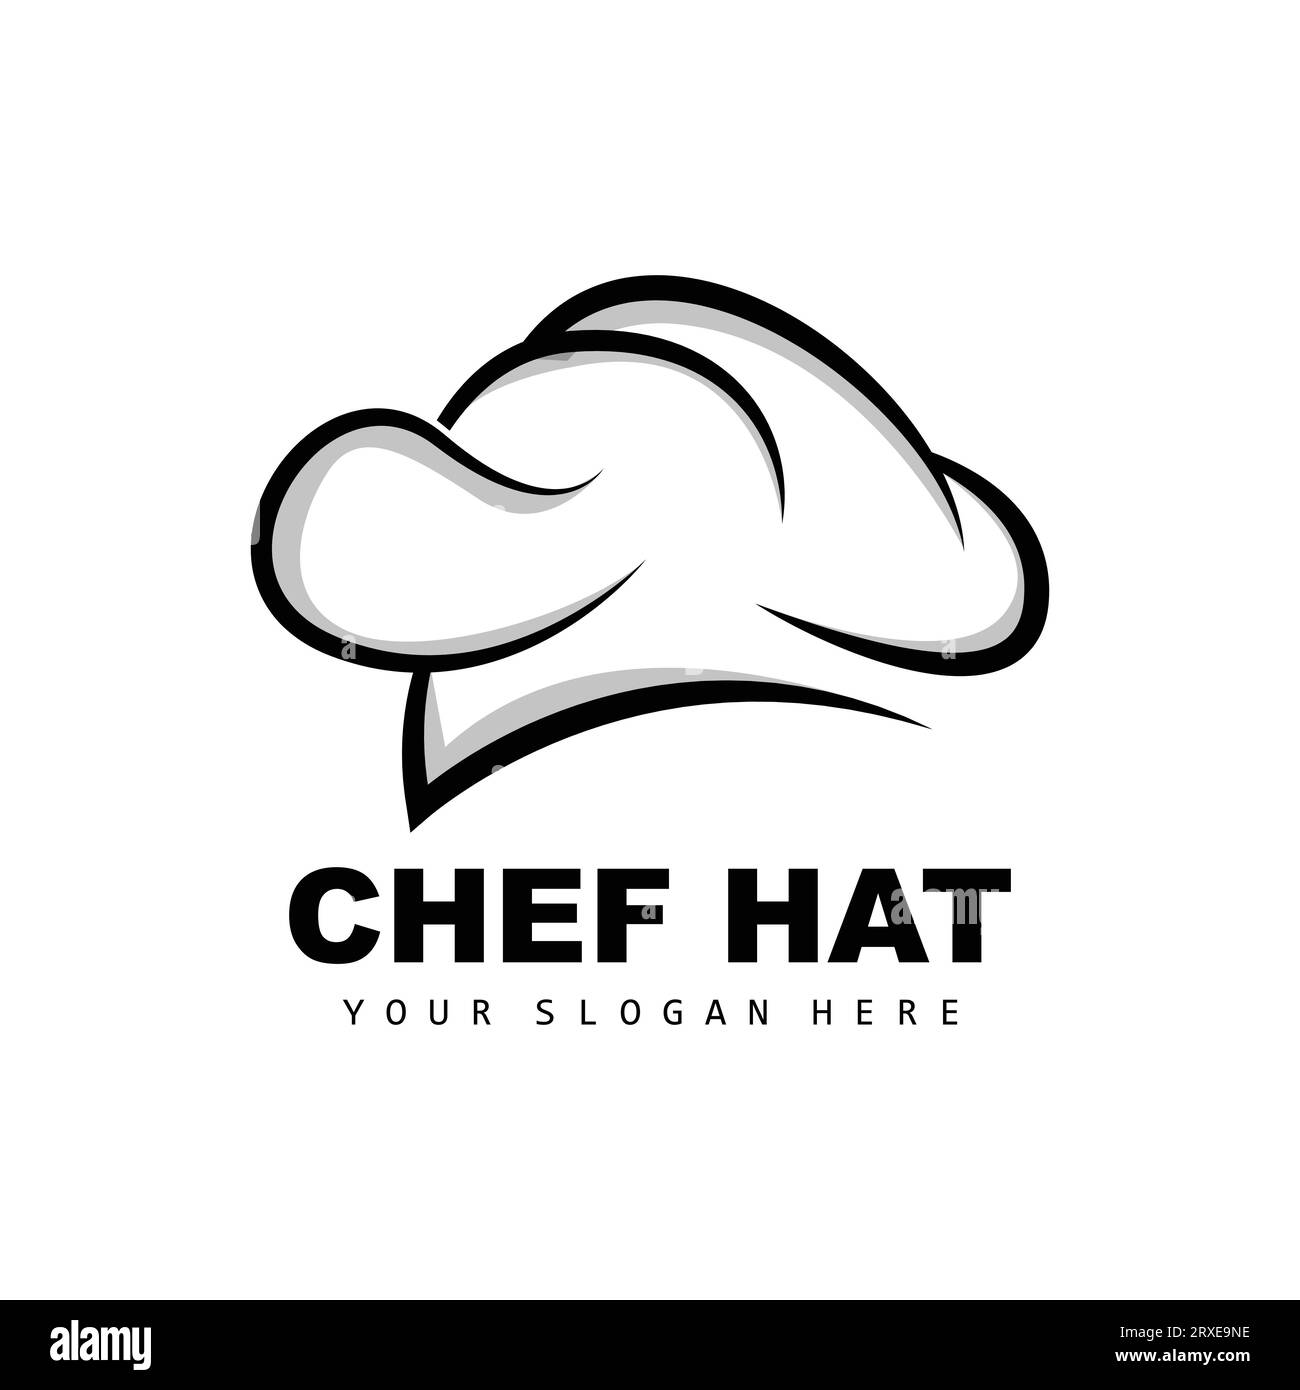 Logo de chapeau de chef, vecteur de chef de restaurant, conception pour restaurant, traiteur, traiteur, boulangerie Illustration de Vecteur